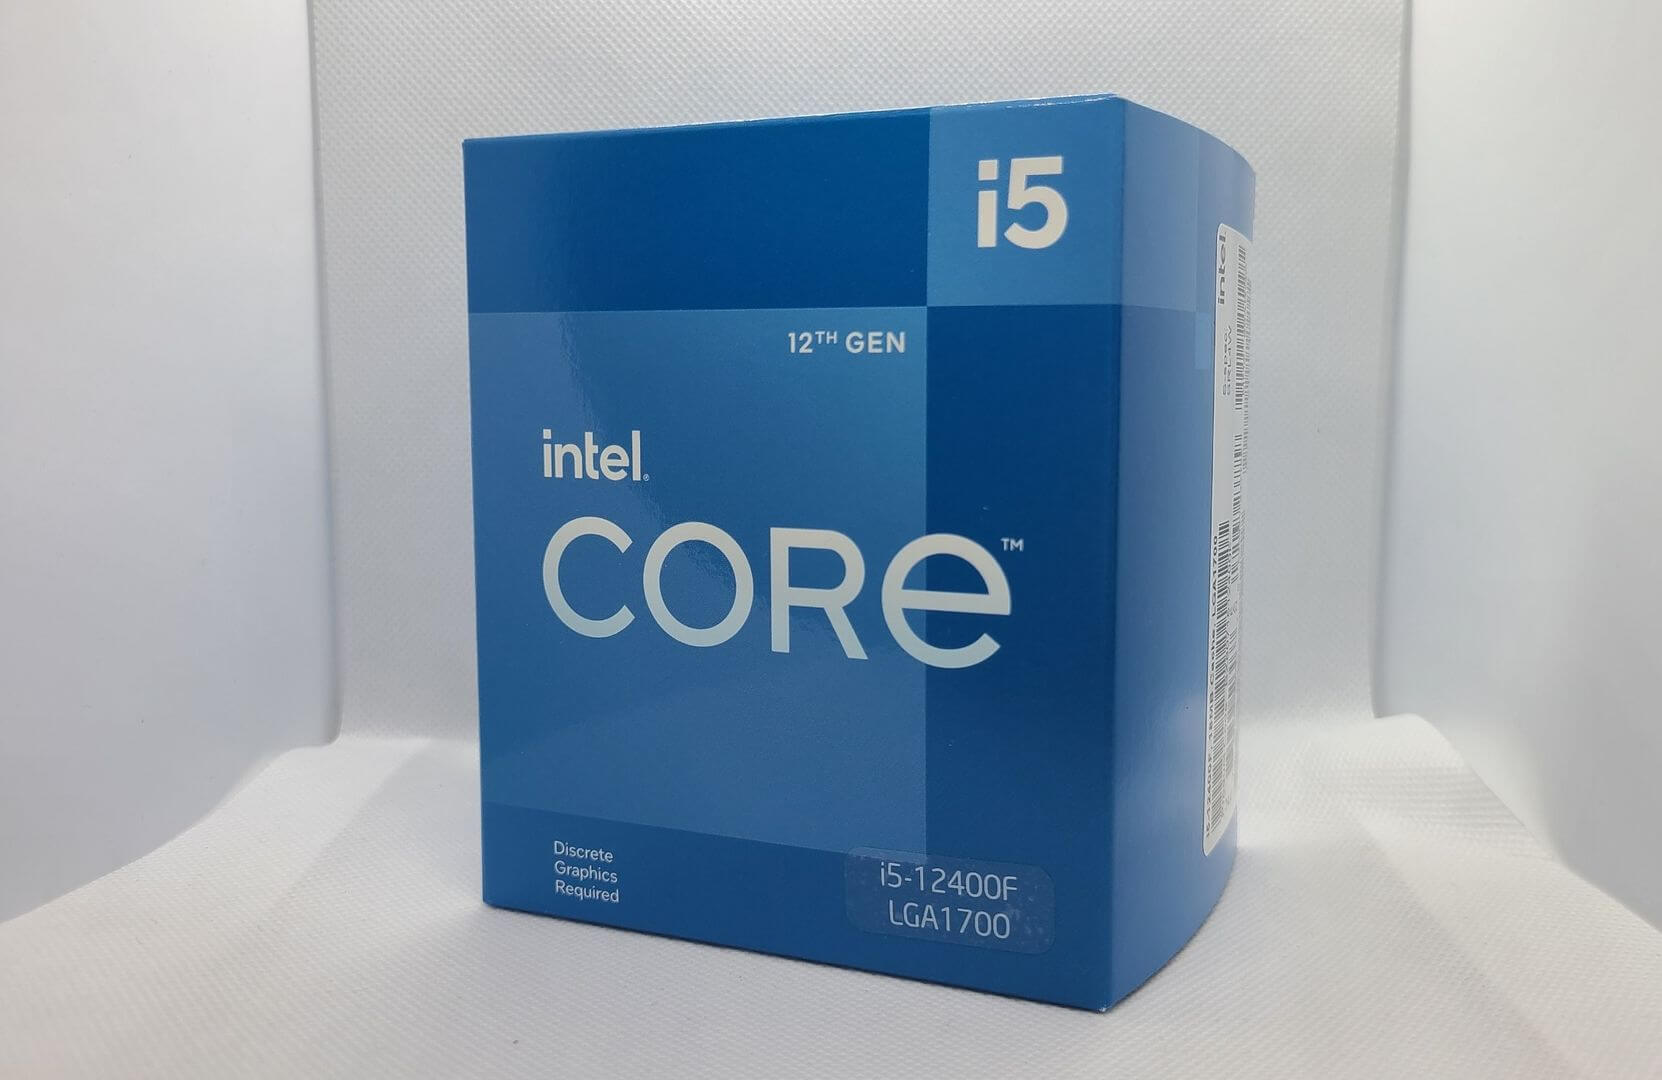 Core i5 12400Fの外装